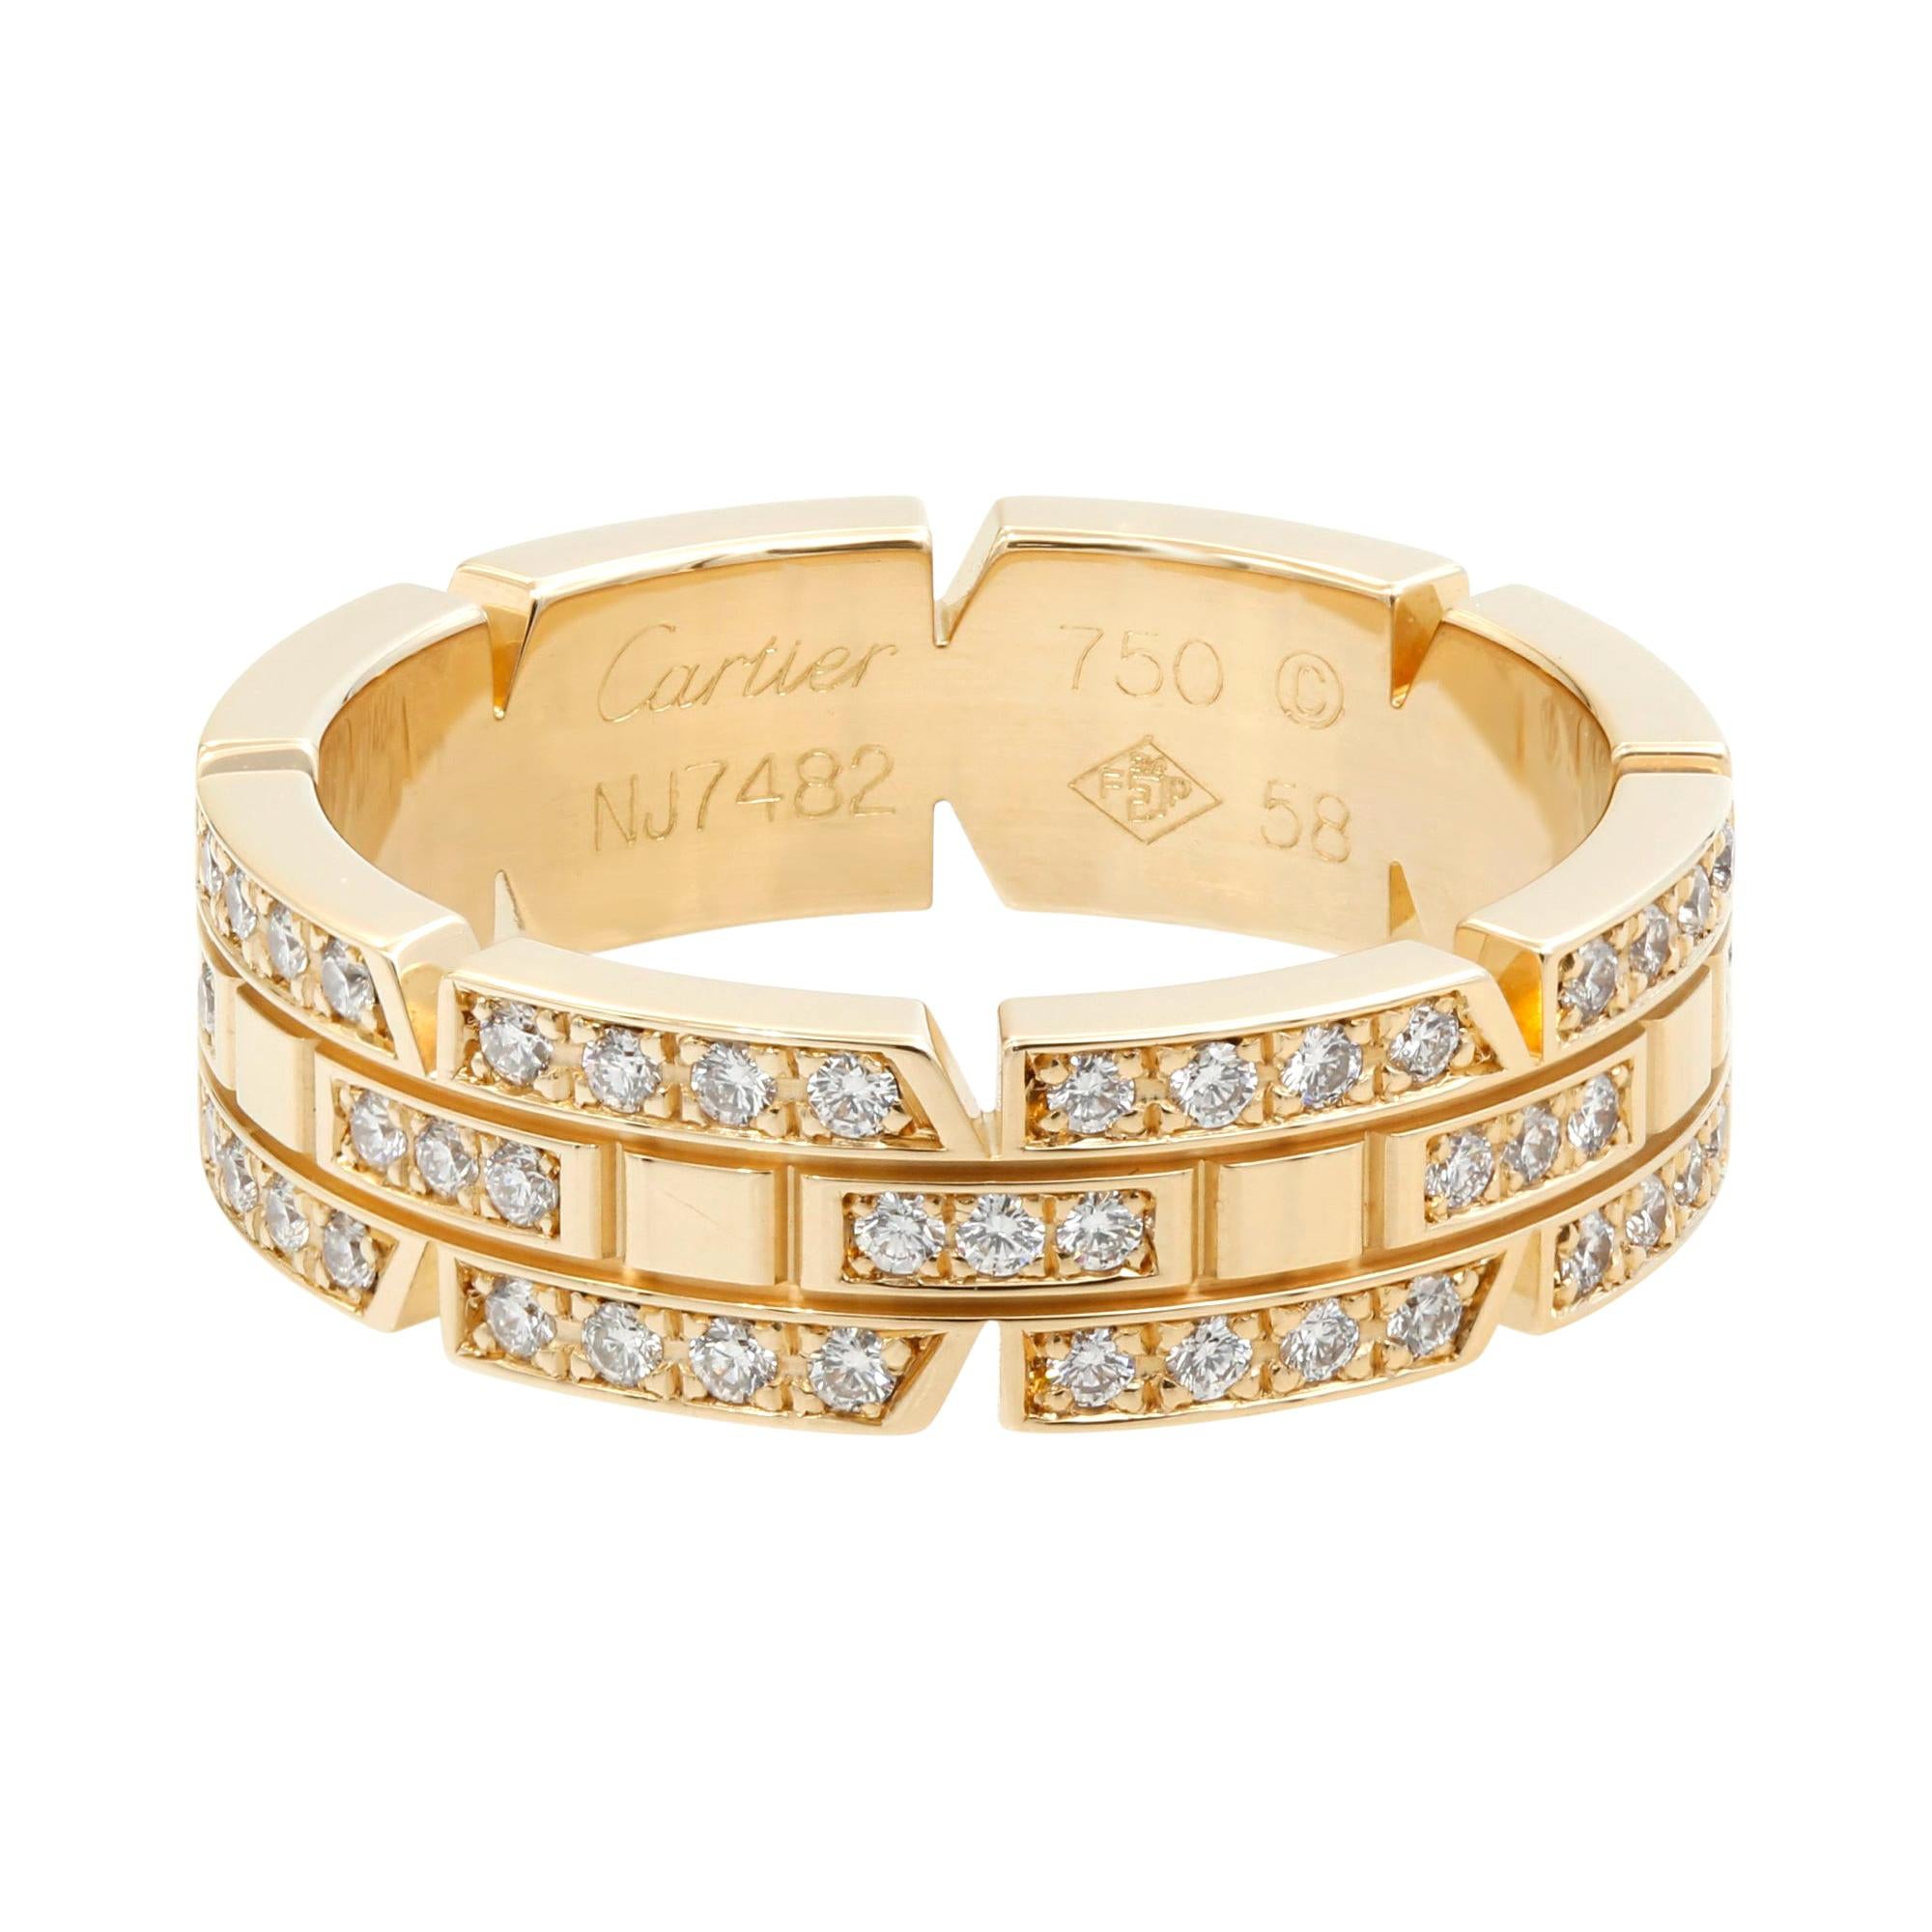 Cartier 18 Karat Rose Gold Tank Francaise Diamond Band Ring 1.04 Carat